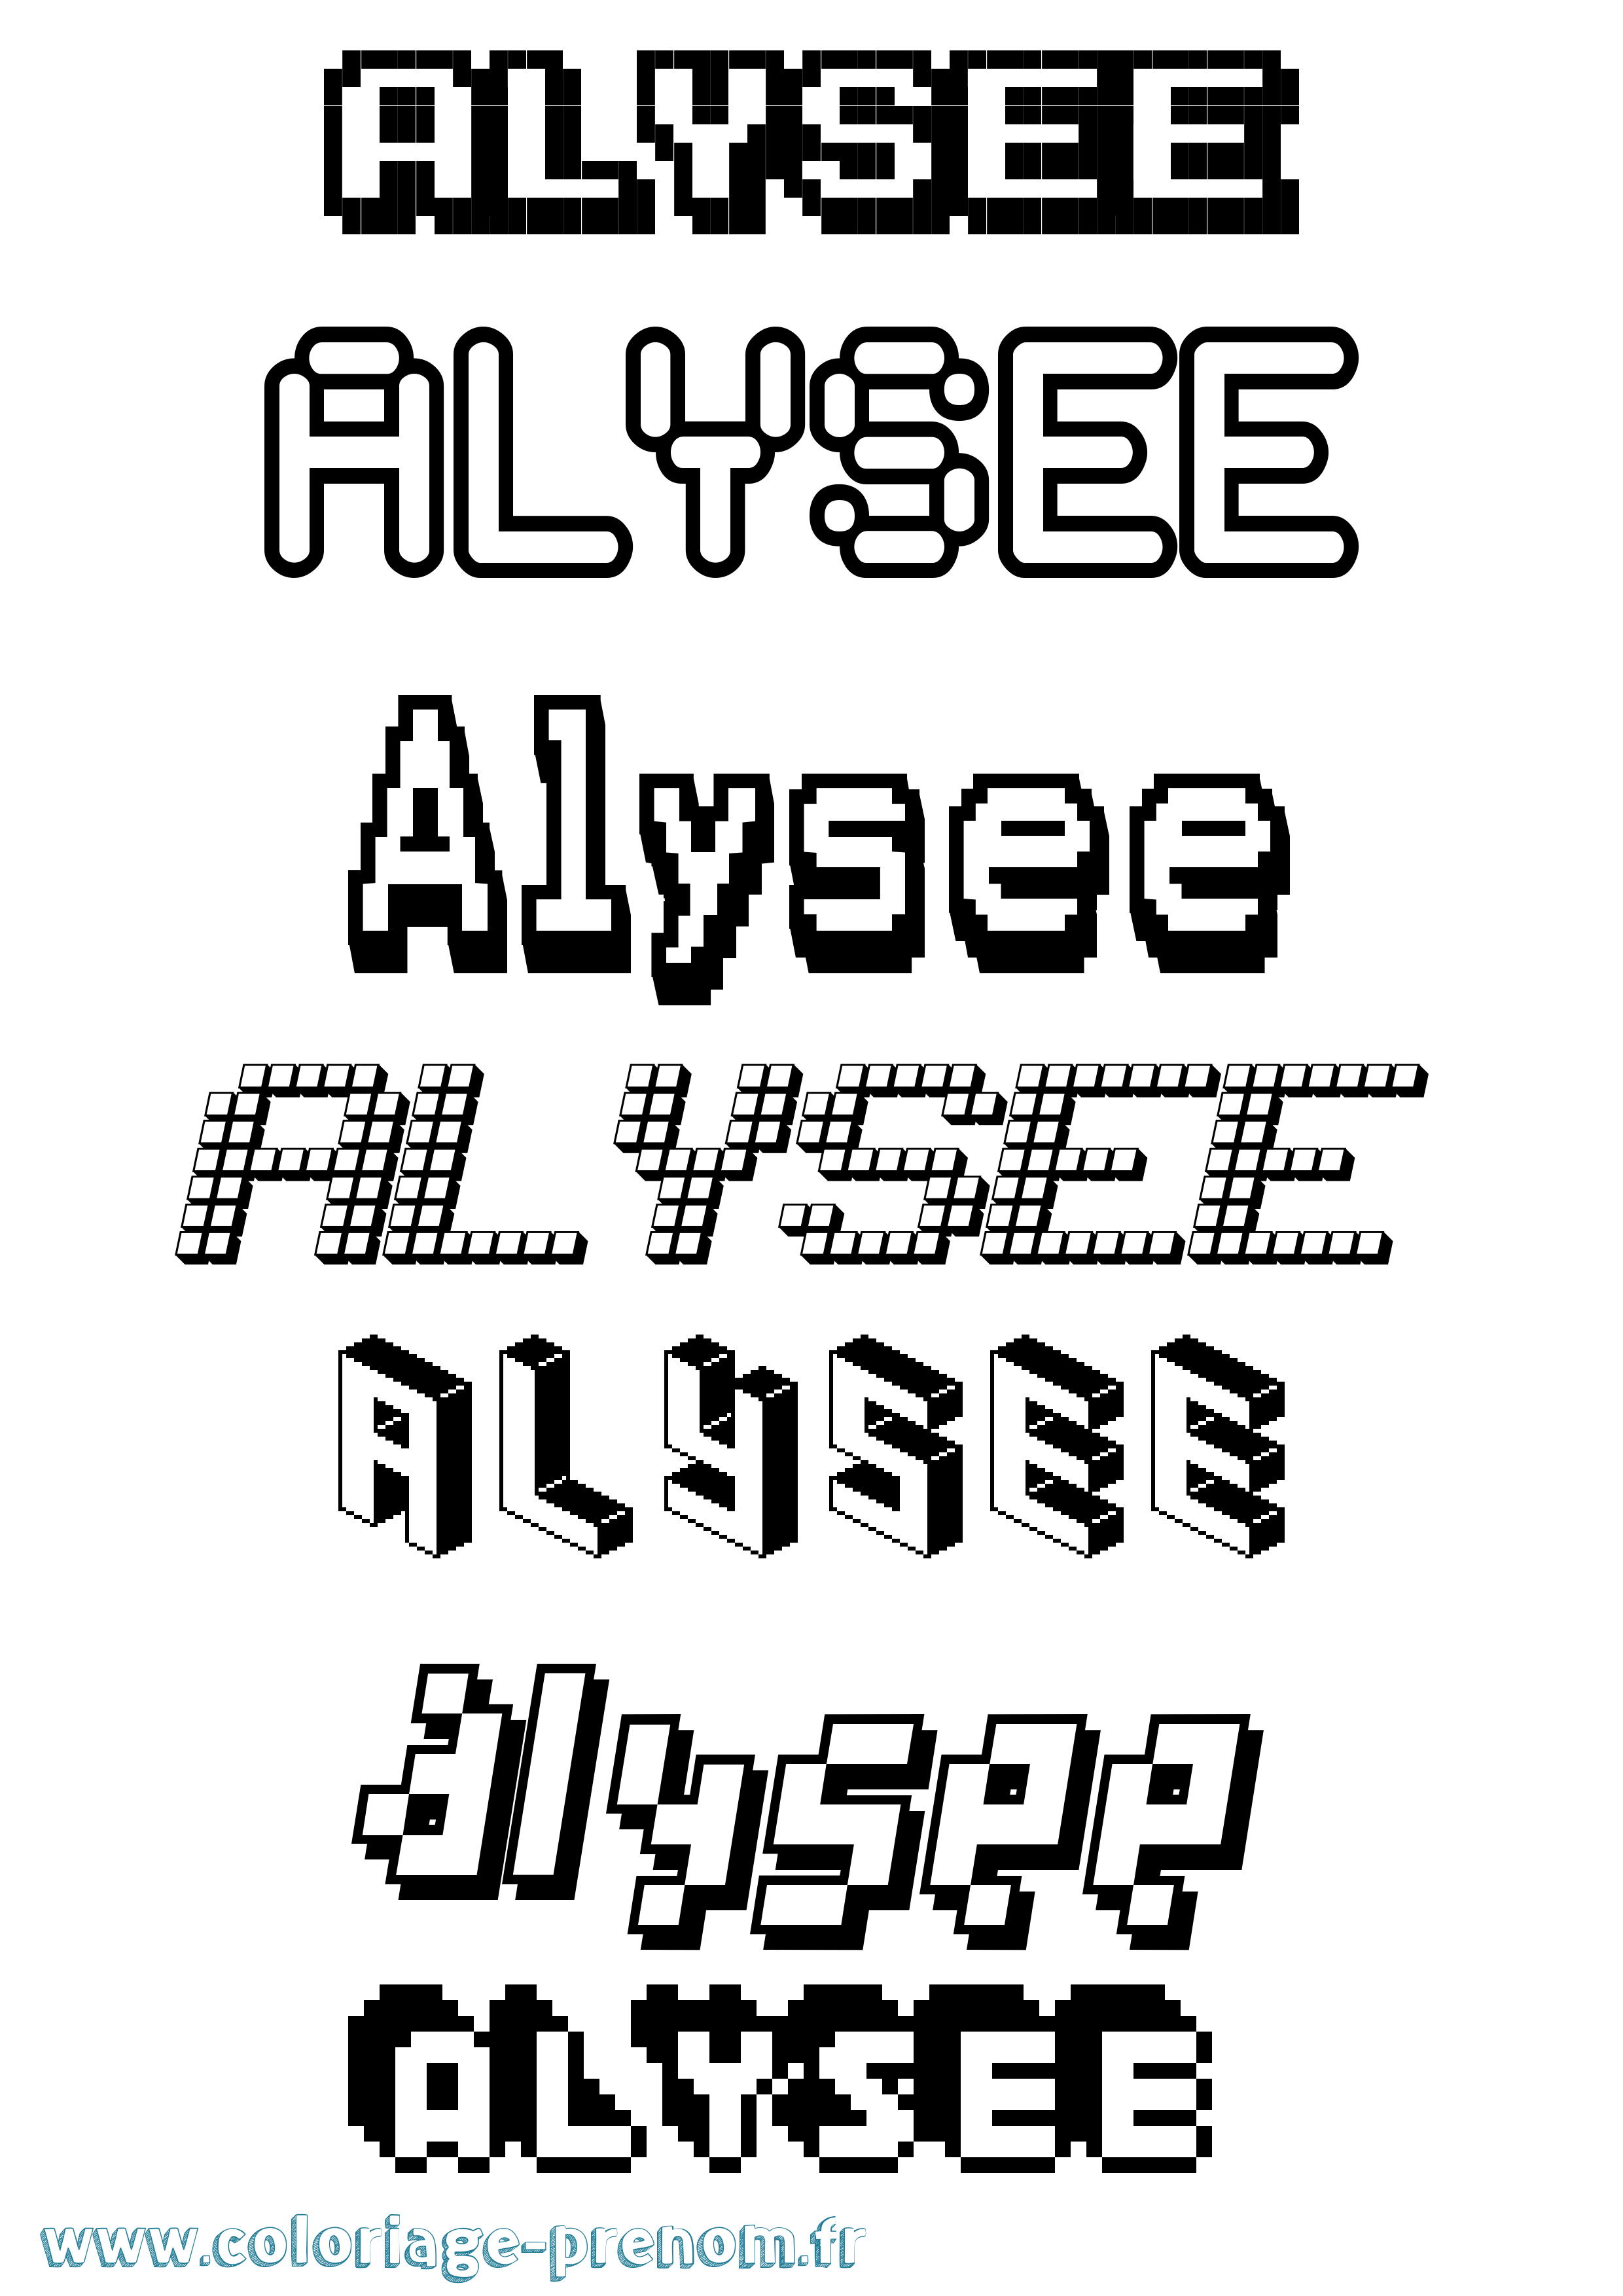 Coloriage prénom Alysee Pixel